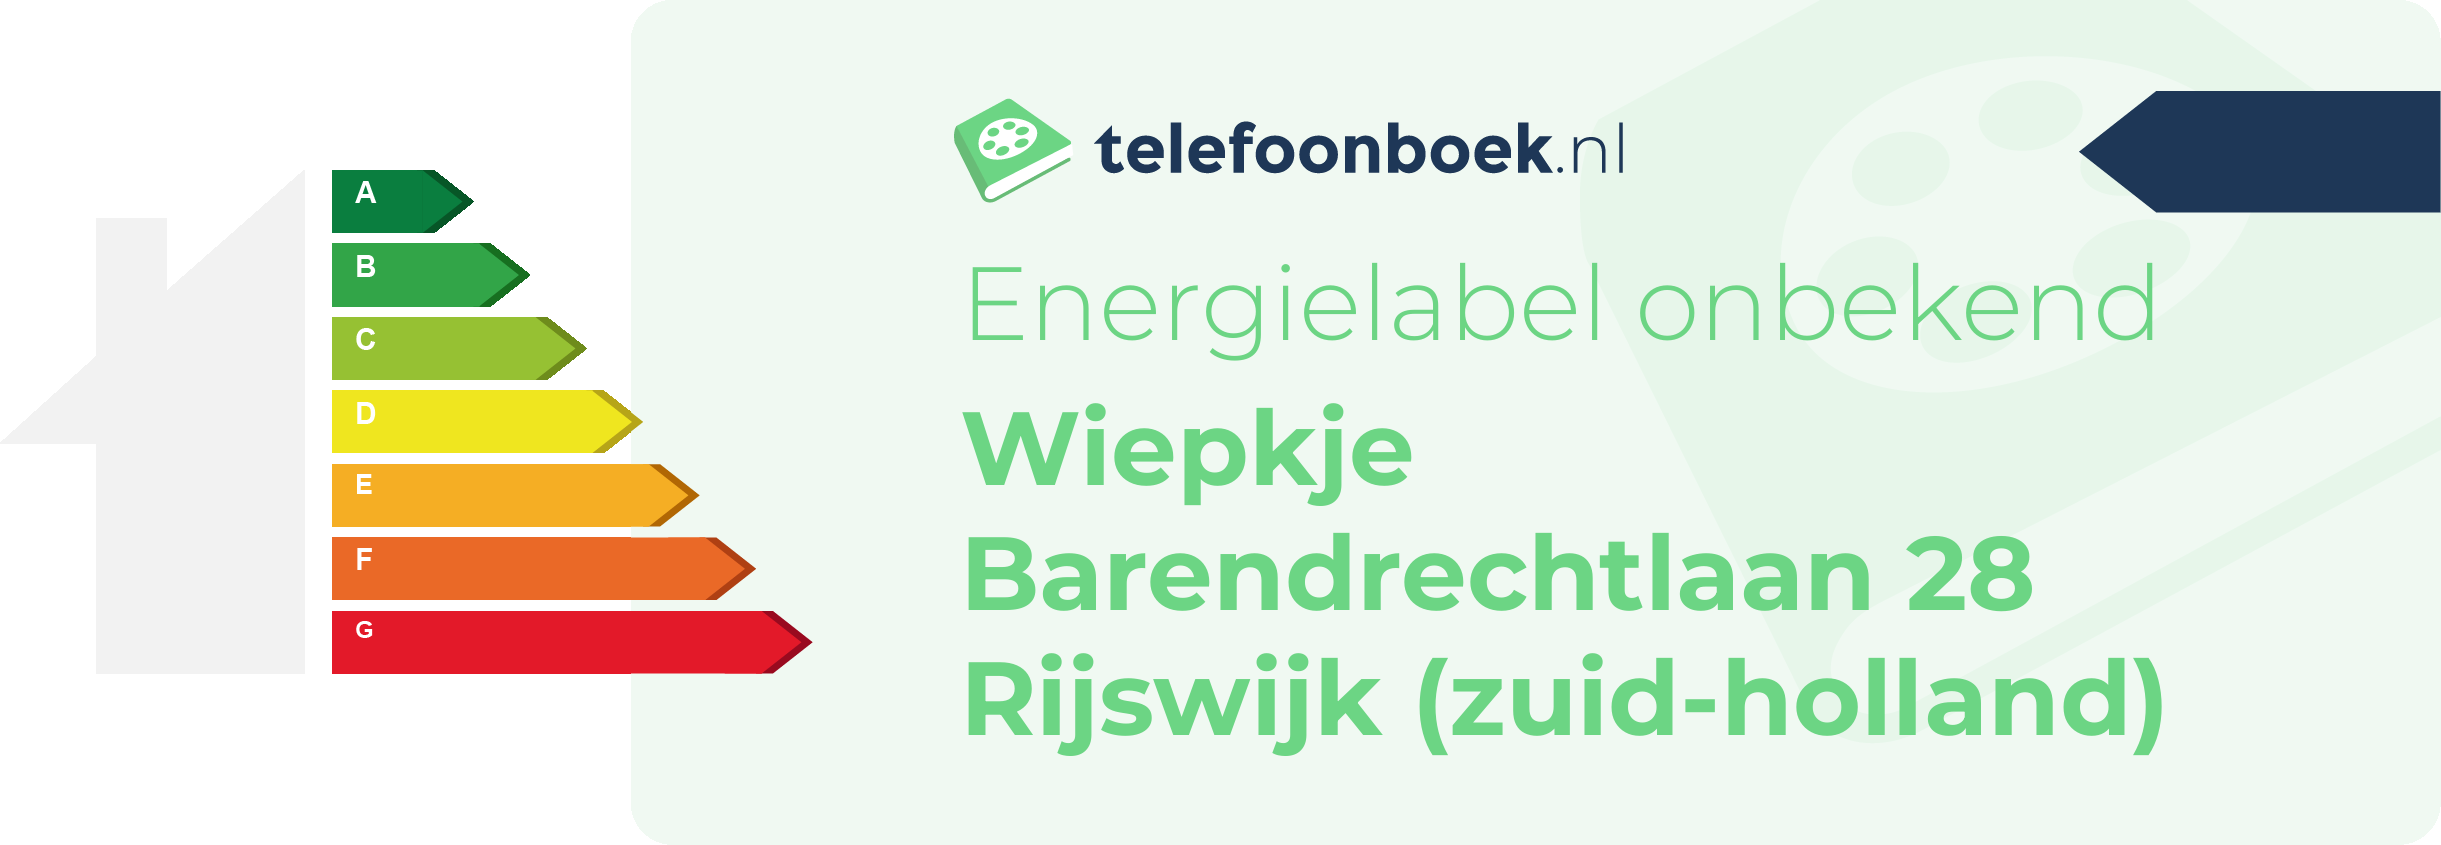 Energielabel Wiepkje Barendrechtlaan 28 Rijswijk (Zuid-Holland)